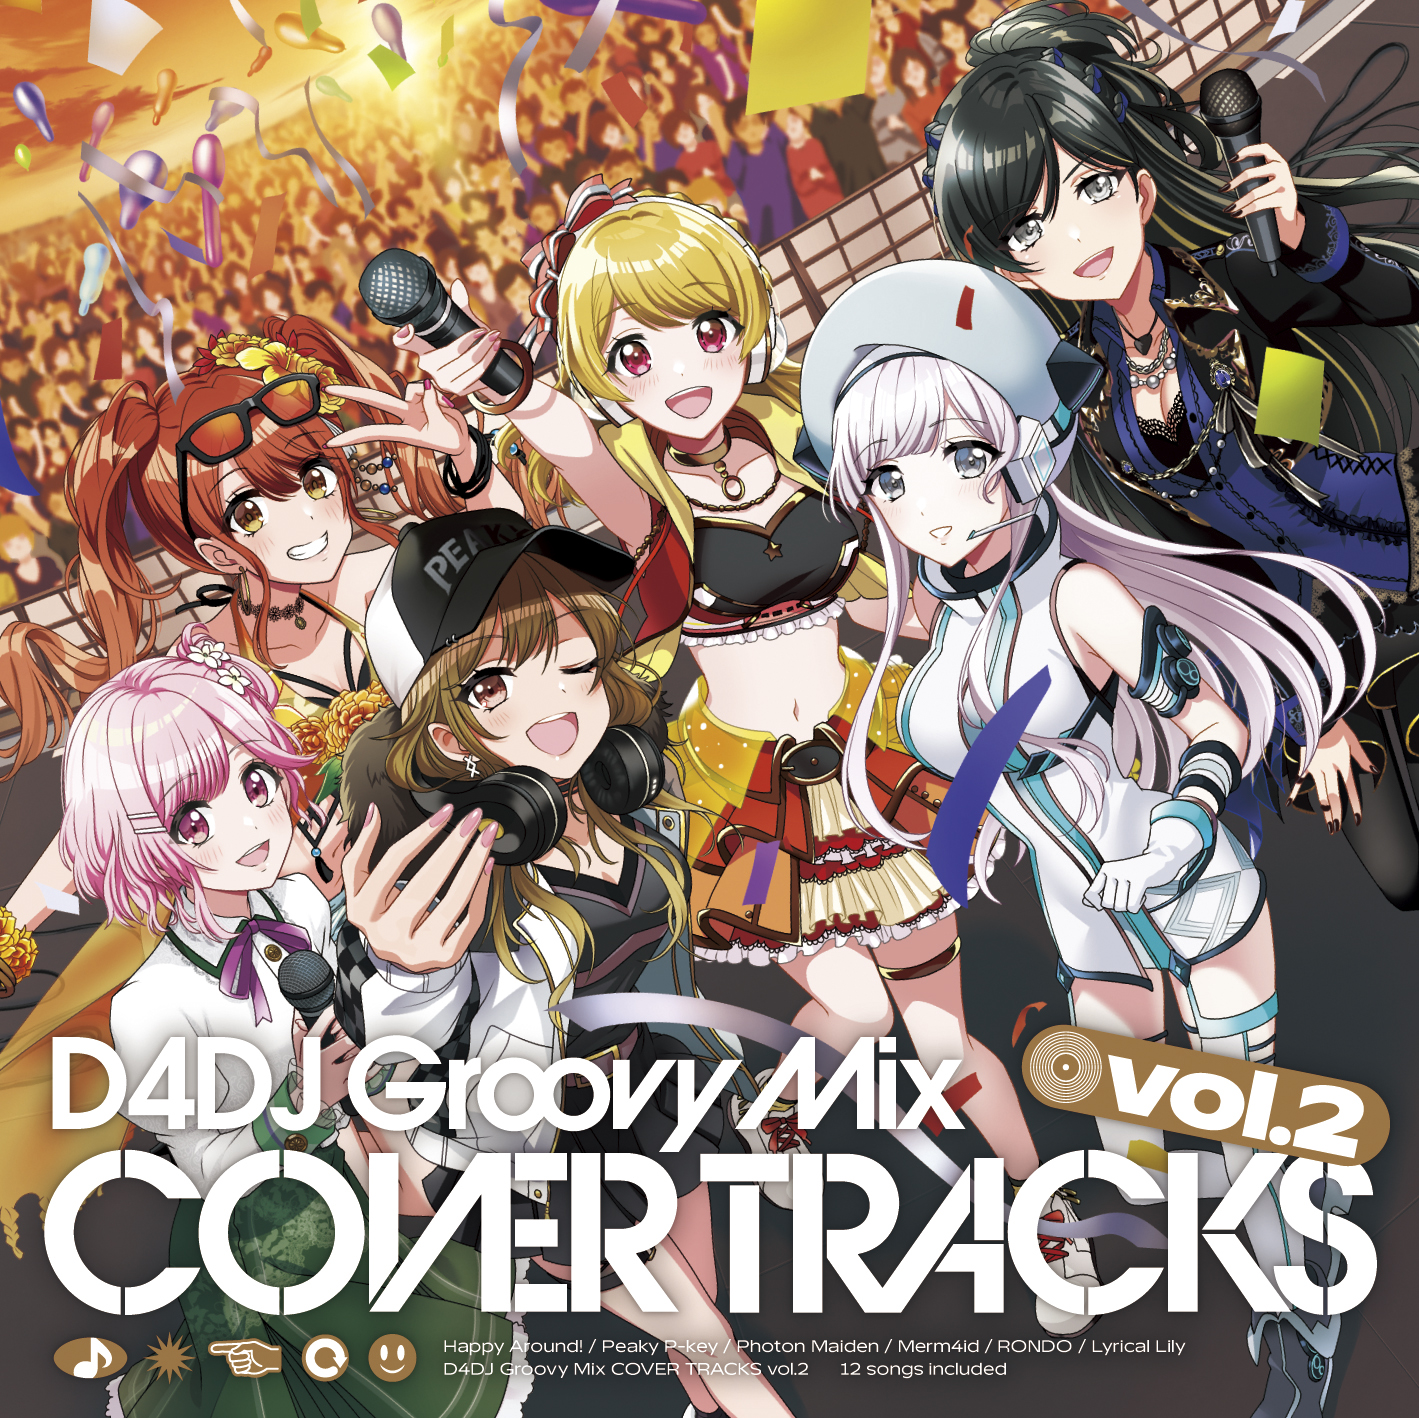 D4Dj Groovy Mix Cover Tracks Vol.2 | Dig Delight Direct Drive Dj Wiki |  Fandom